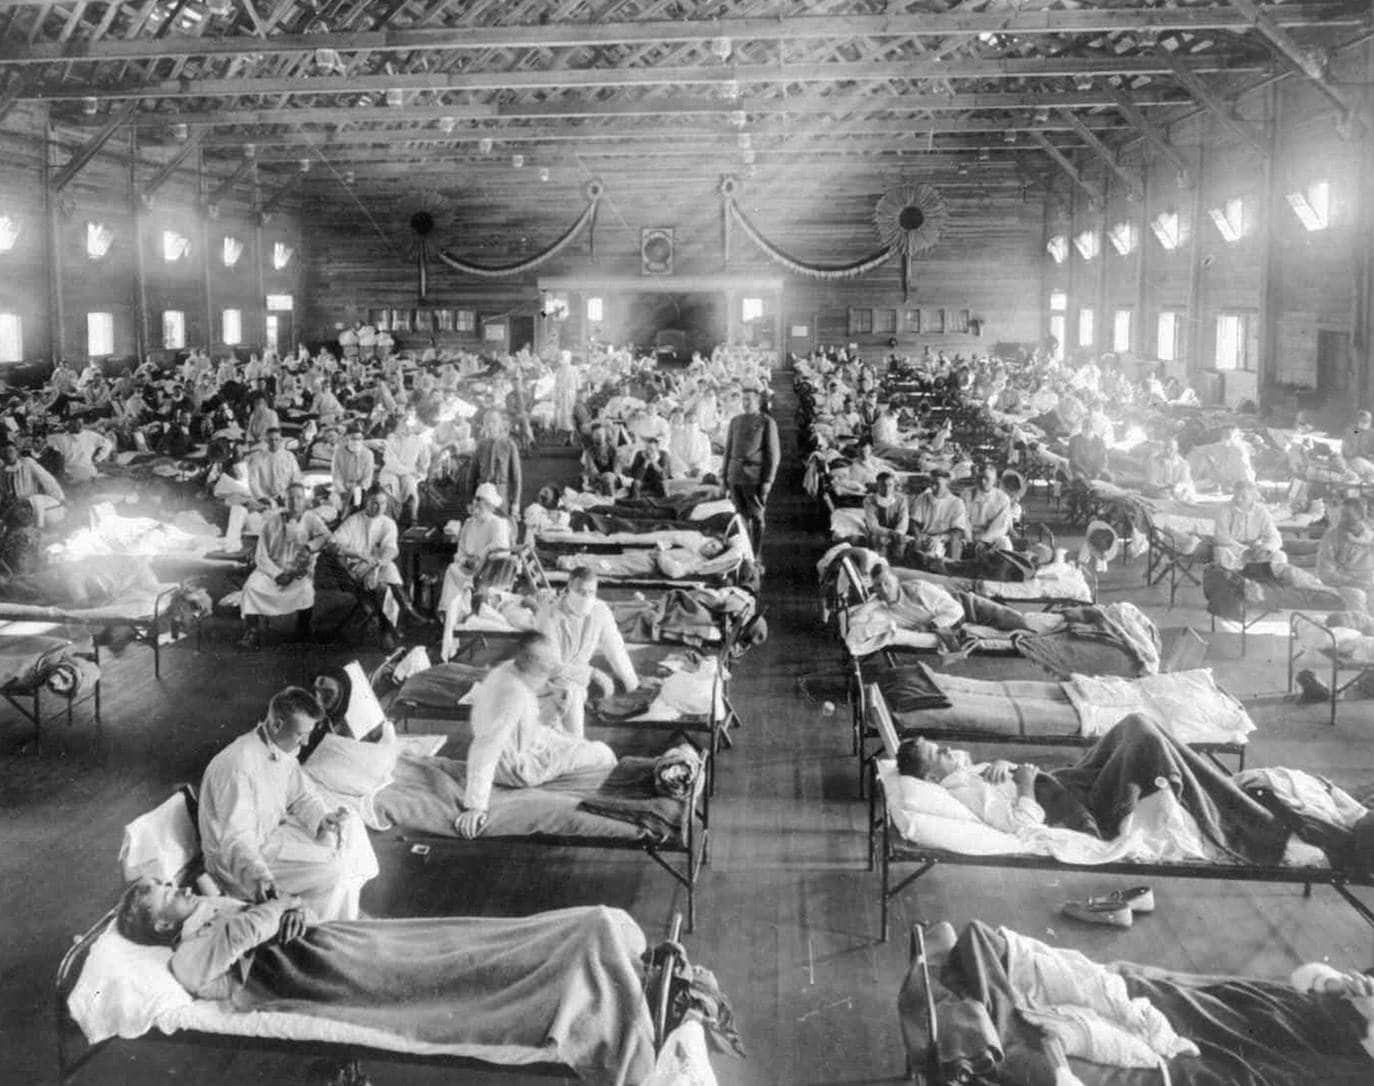 La gripe en circulación es una cepa heredera de la que causó la pandemia de 1918